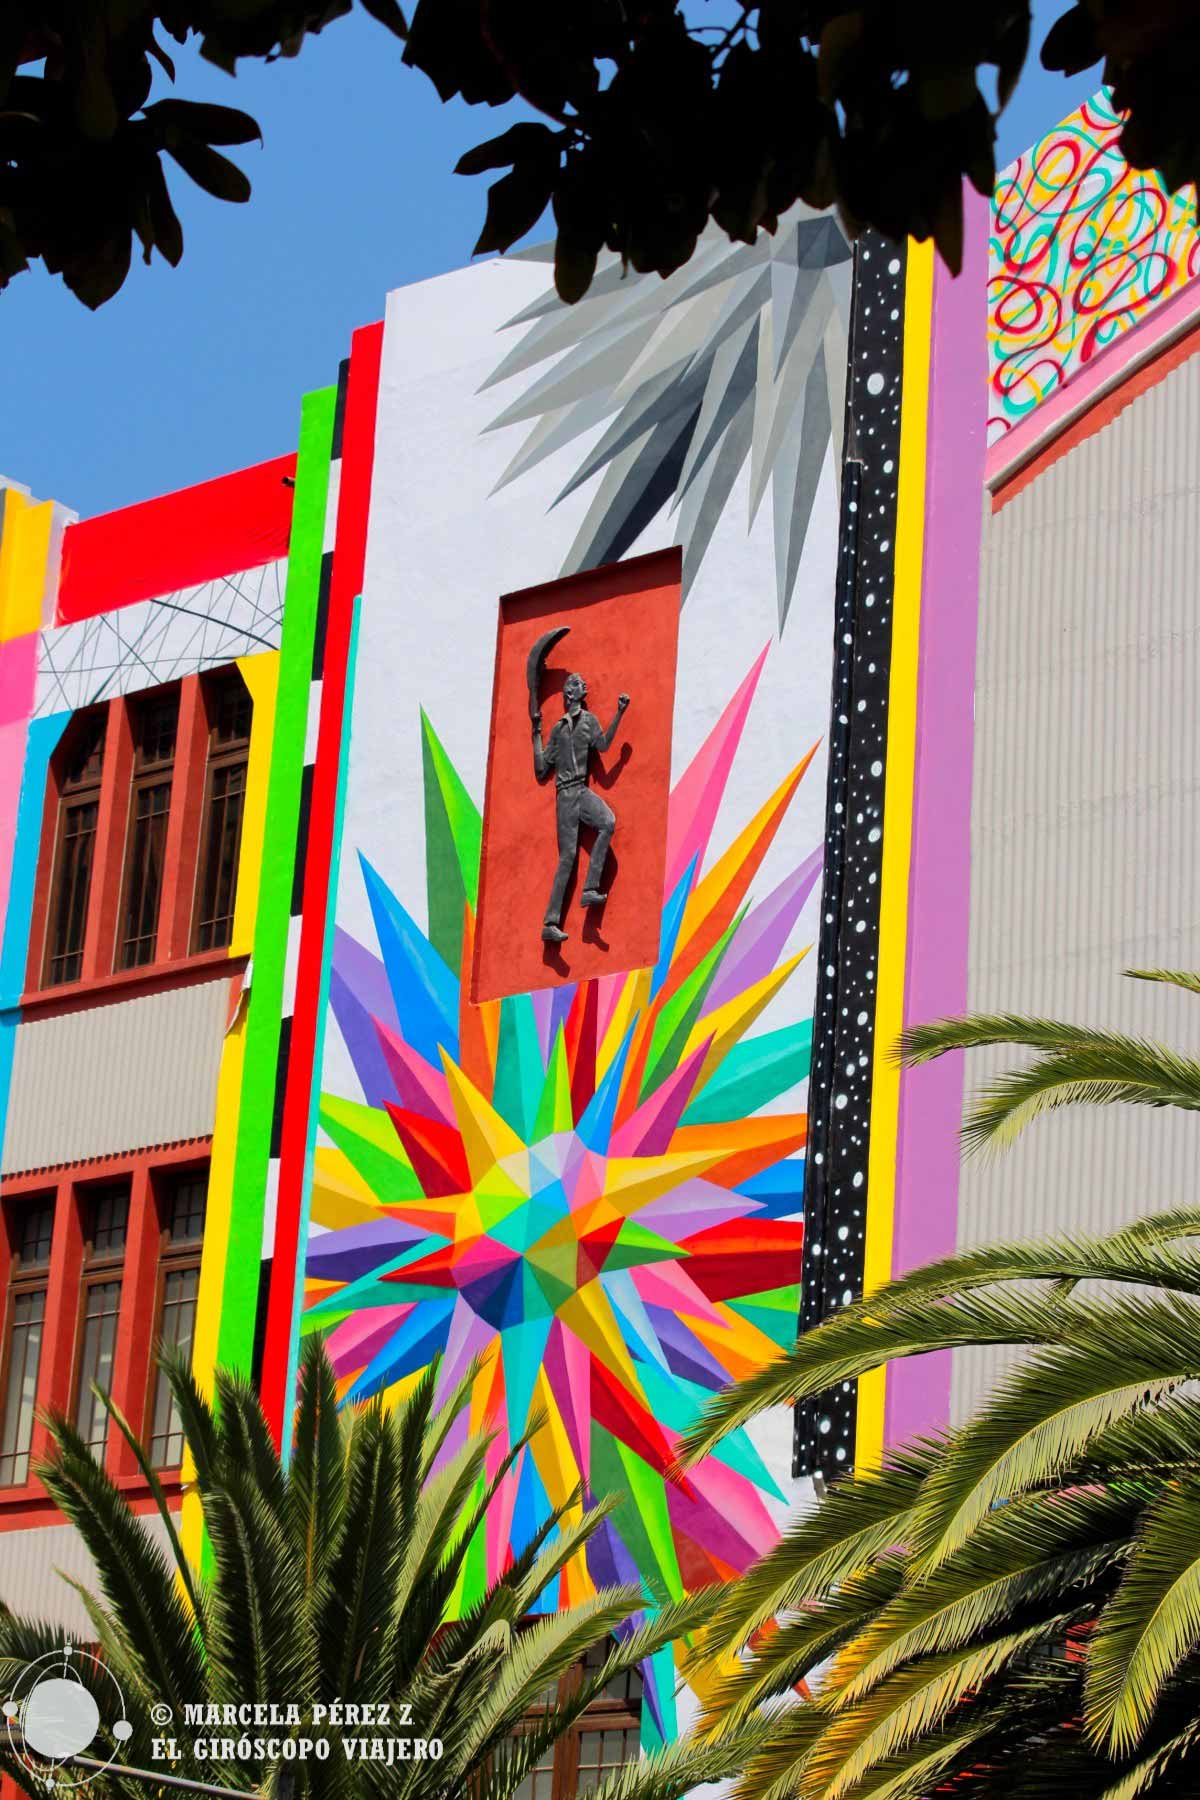 Los colores y formas de Okuda engalanando el Frontón México de CDMX